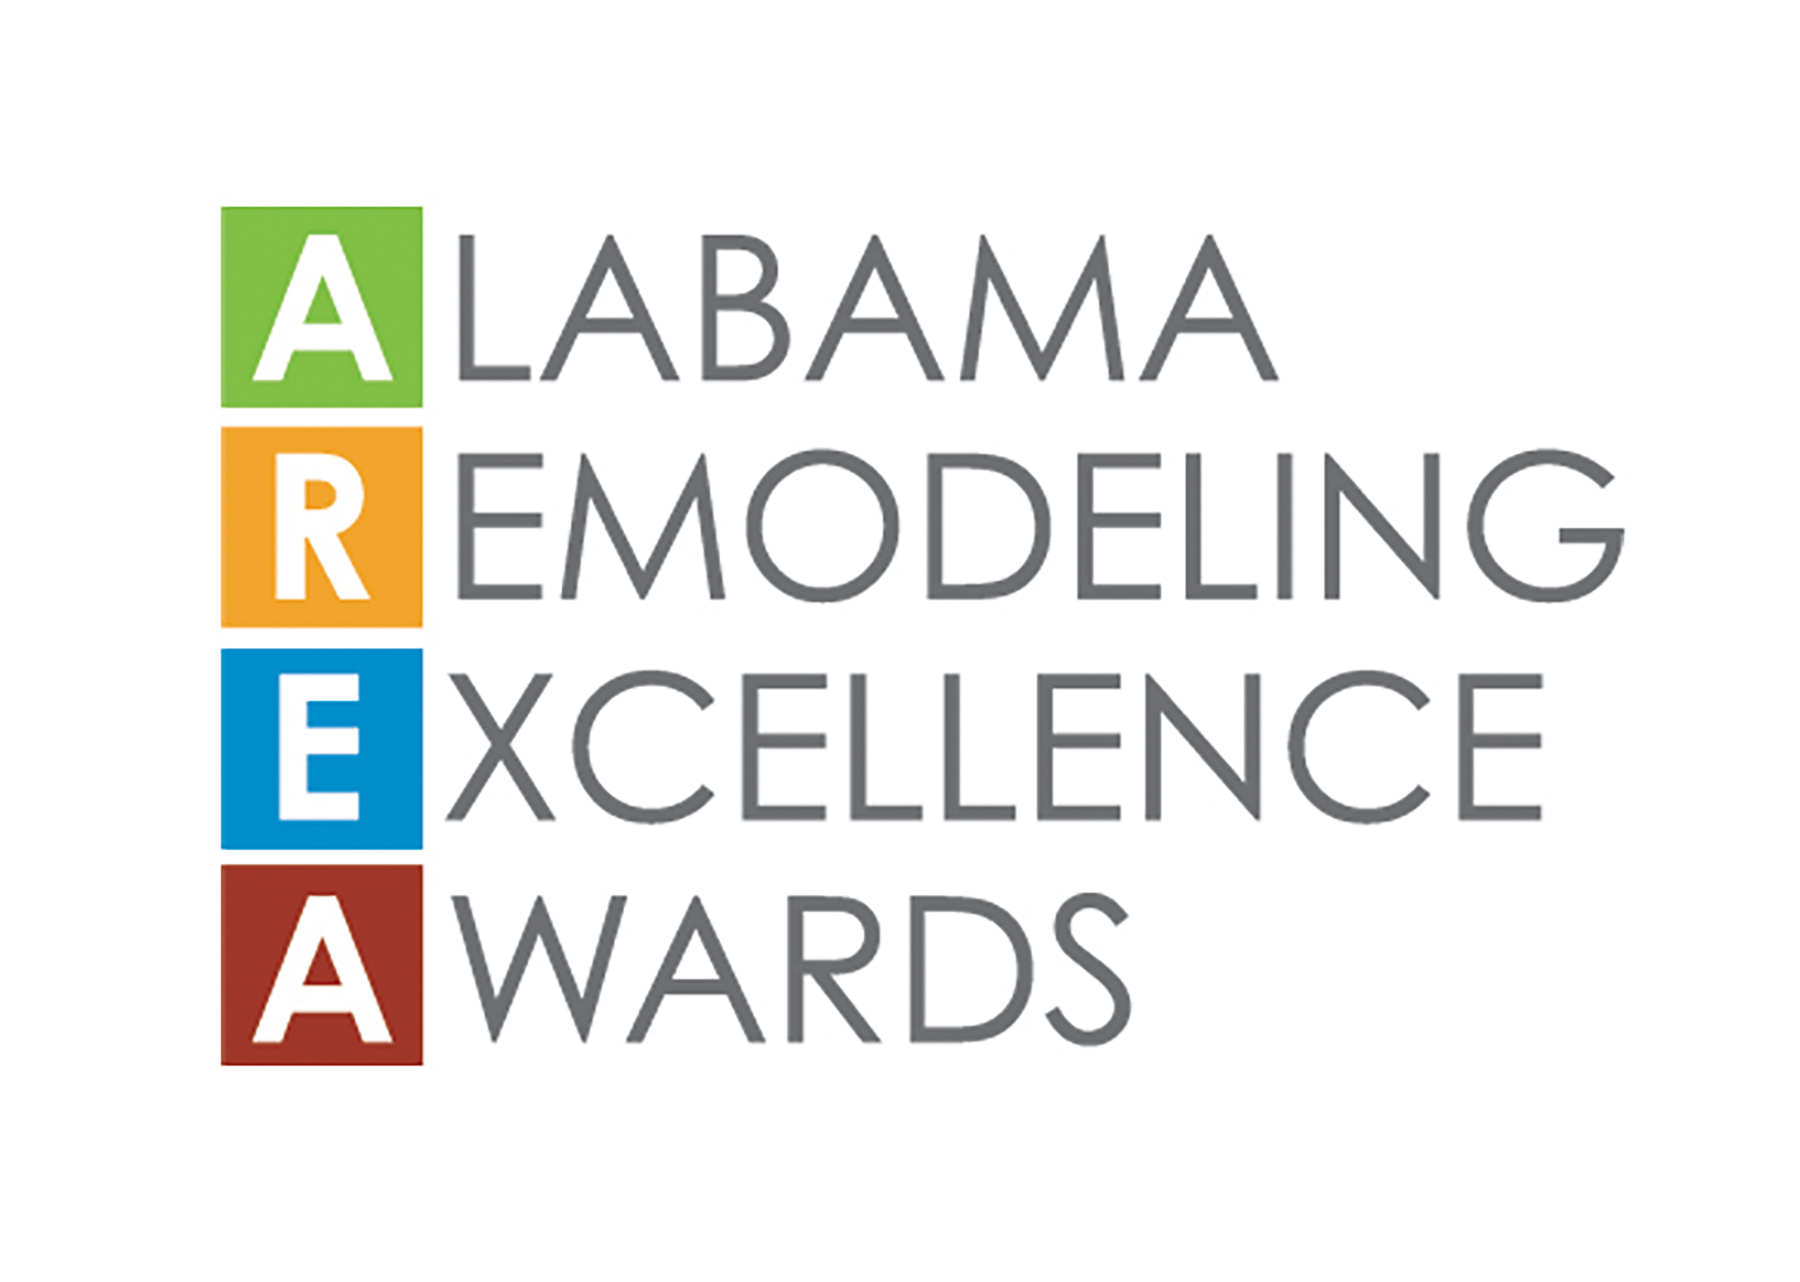 Alabama Remodeling Excellence Awards logo